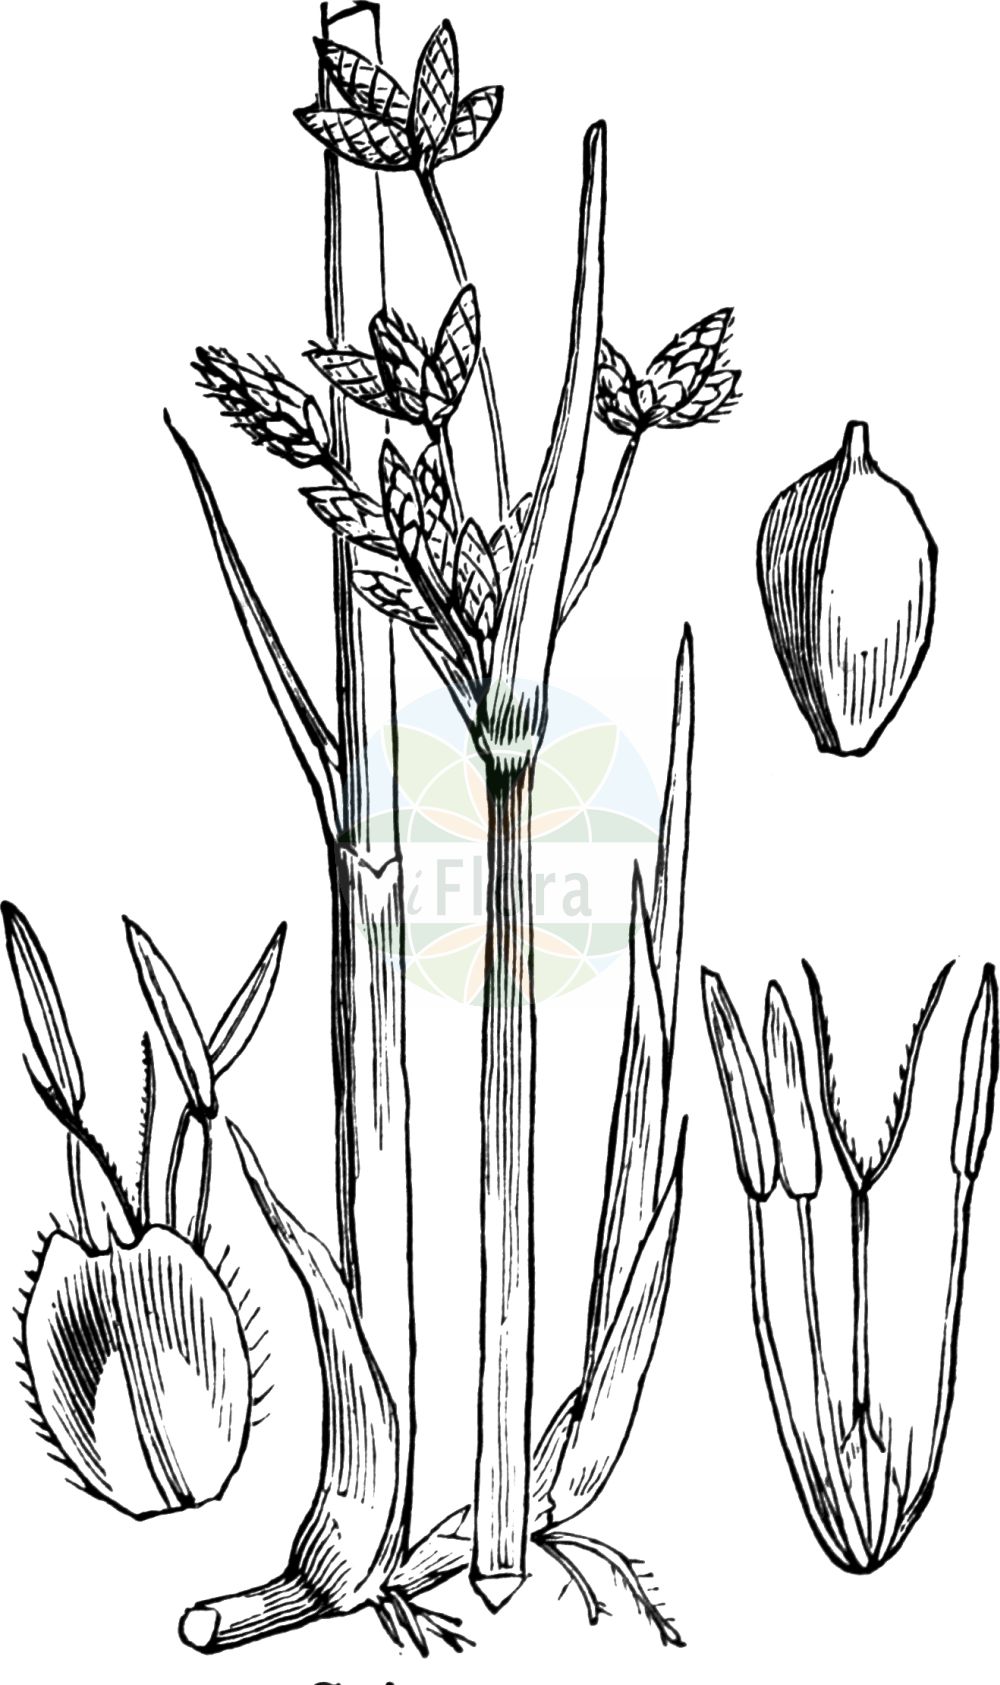 Historische Abbildung von Schoenoplectus triqueter (Dreikantige Teichsimse - Triangular Club-rush). Das Bild zeigt Blatt, Bluete, Frucht und Same. ---- Historical Drawing of Schoenoplectus triqueter (Dreikantige Teichsimse - Triangular Club-rush). The image is showing leaf, flower, fruit and seed.(Schoenoplectus triqueter,Dreikantige Teichsimse,Triangular Club-rush,Schoenoplectus triqueter,Scirpus triqueter,Dreikantige Teichsimse,Dreikantige Teichbinse,Triangular Club-rush,Triangular Bulrush,Streambank Bulrush,Schoenoplectus,Teichsimse,Bulrush,Cyperaceae,Sauergräser,Sedge family,Blatt,Bluete,Frucht,Same,leaf,flower,fruit,seed,Fitch et al. (1880))